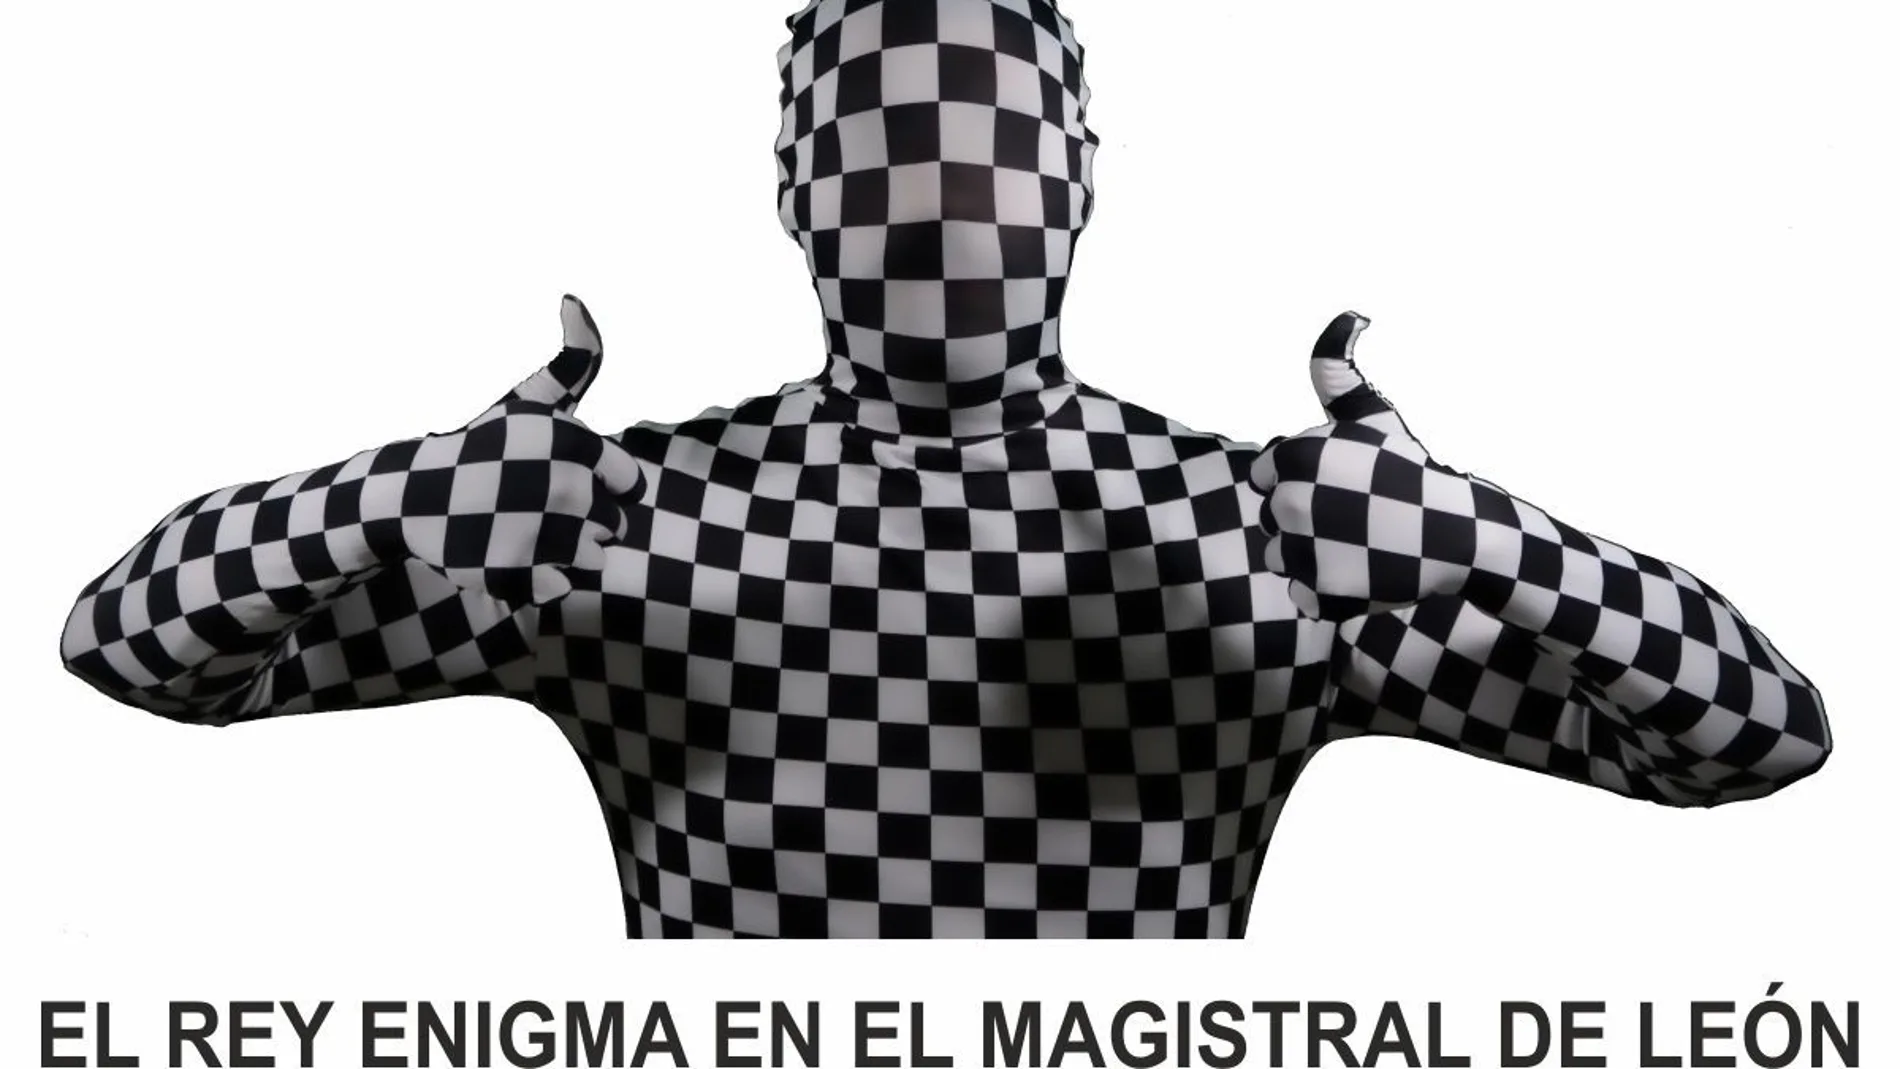 Imagen del Rey Enigma del ajedrez